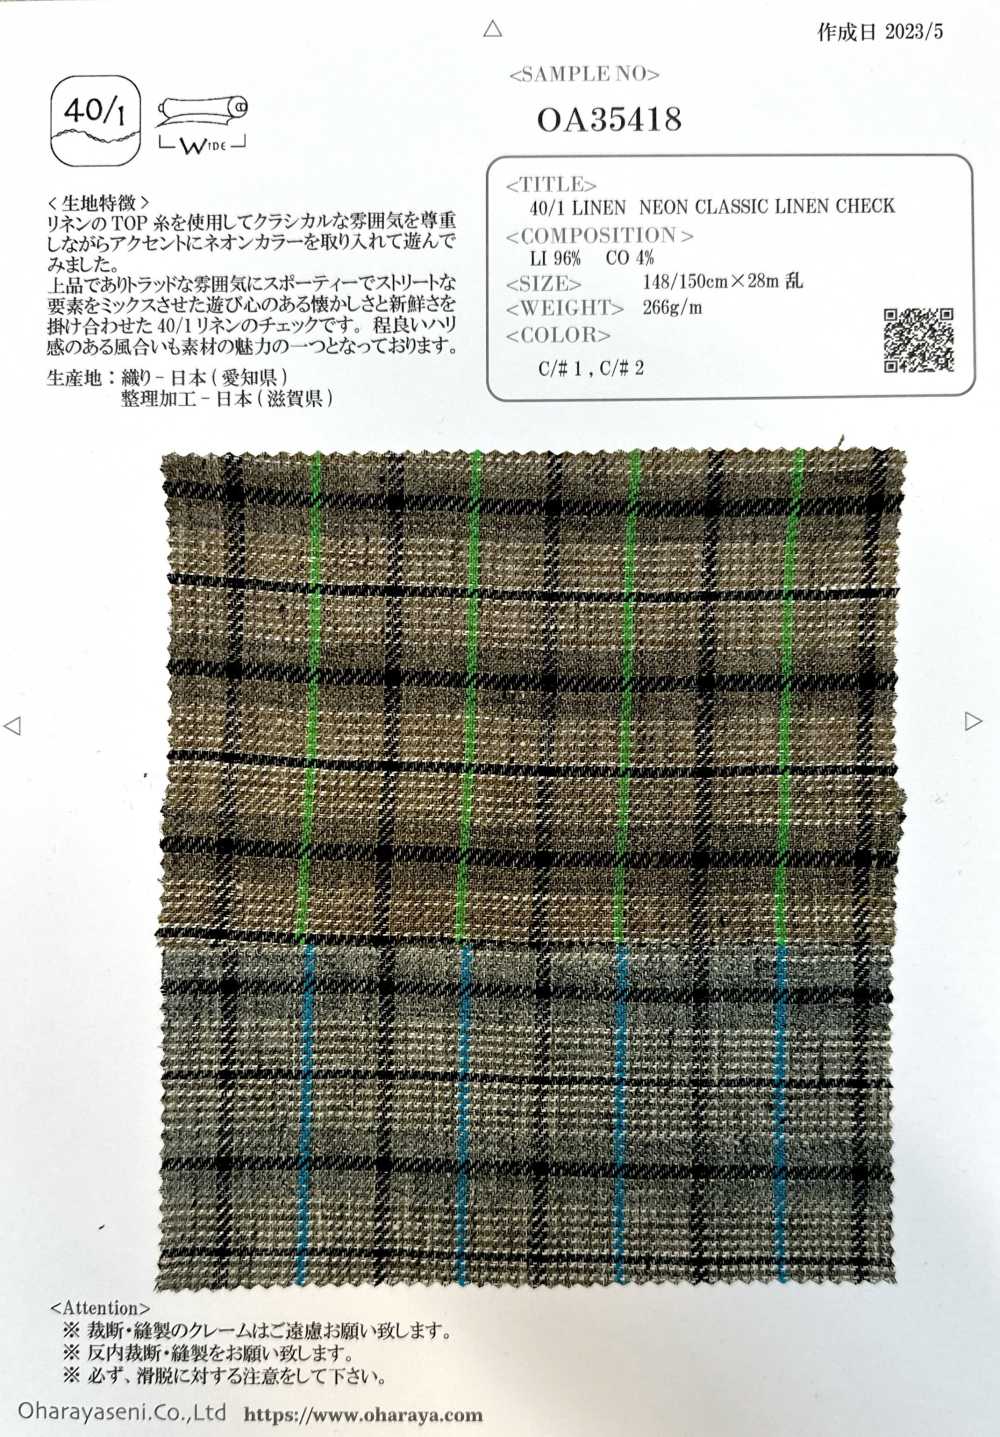 OA35418 LINHO 40/1 NEON CLÁSSICO CHEQUE DE LINHO[Têxtil / Tecido] Oharayaseni